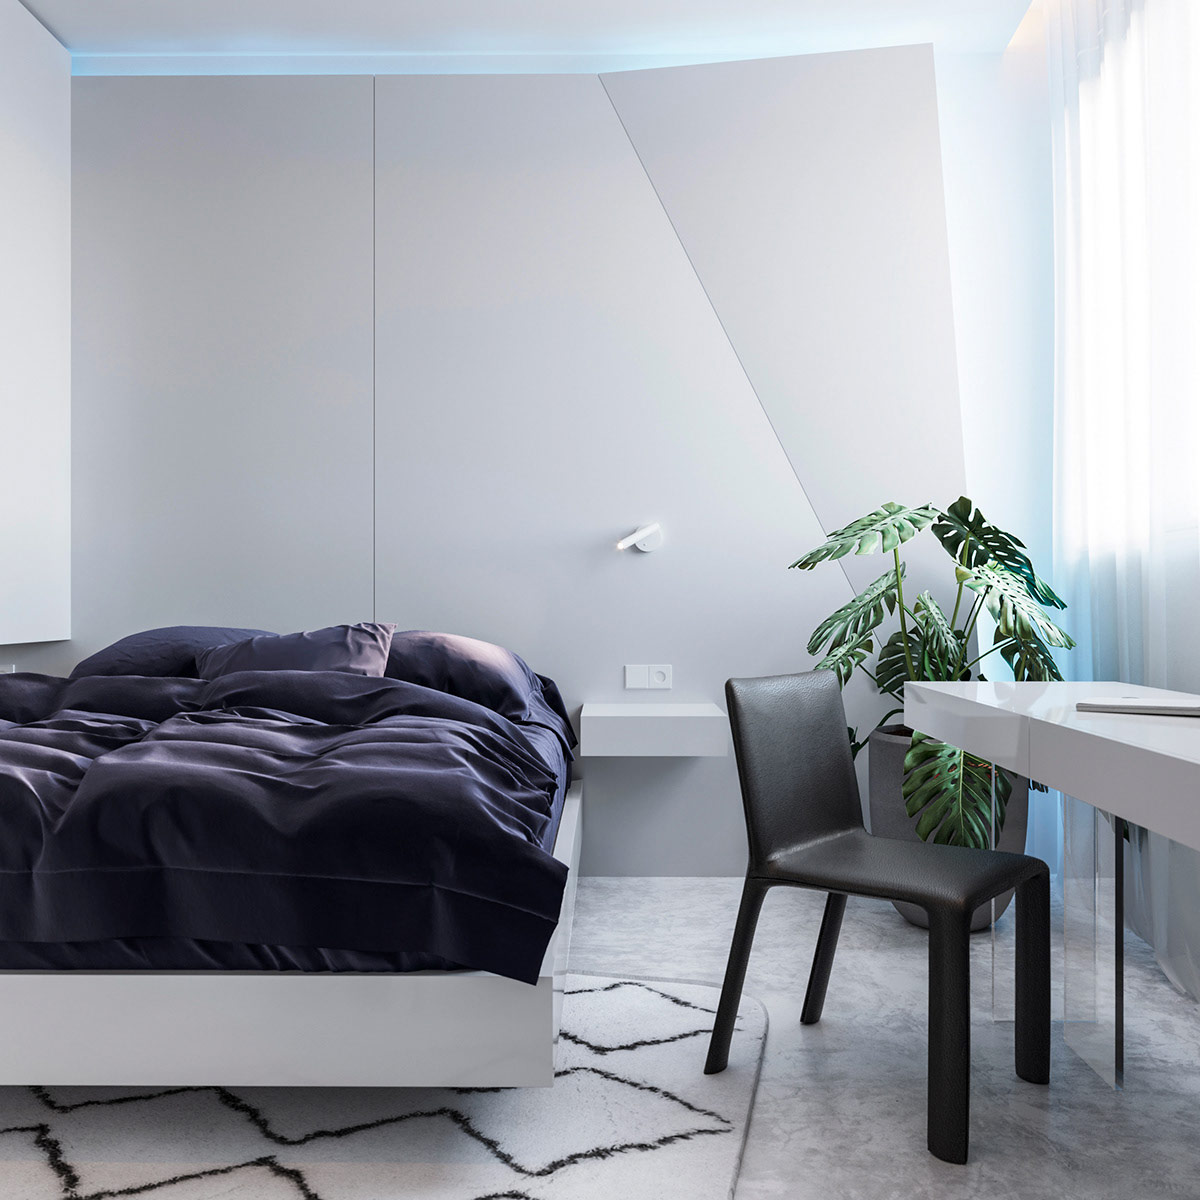 Bức tường gấp đầu giường tạo ấn tượng cho phòng ngủ nhỏ phong cách tối giản. Chậu cảnh tươi tốt mang sắc xanh thiên nhiên vào nhà.